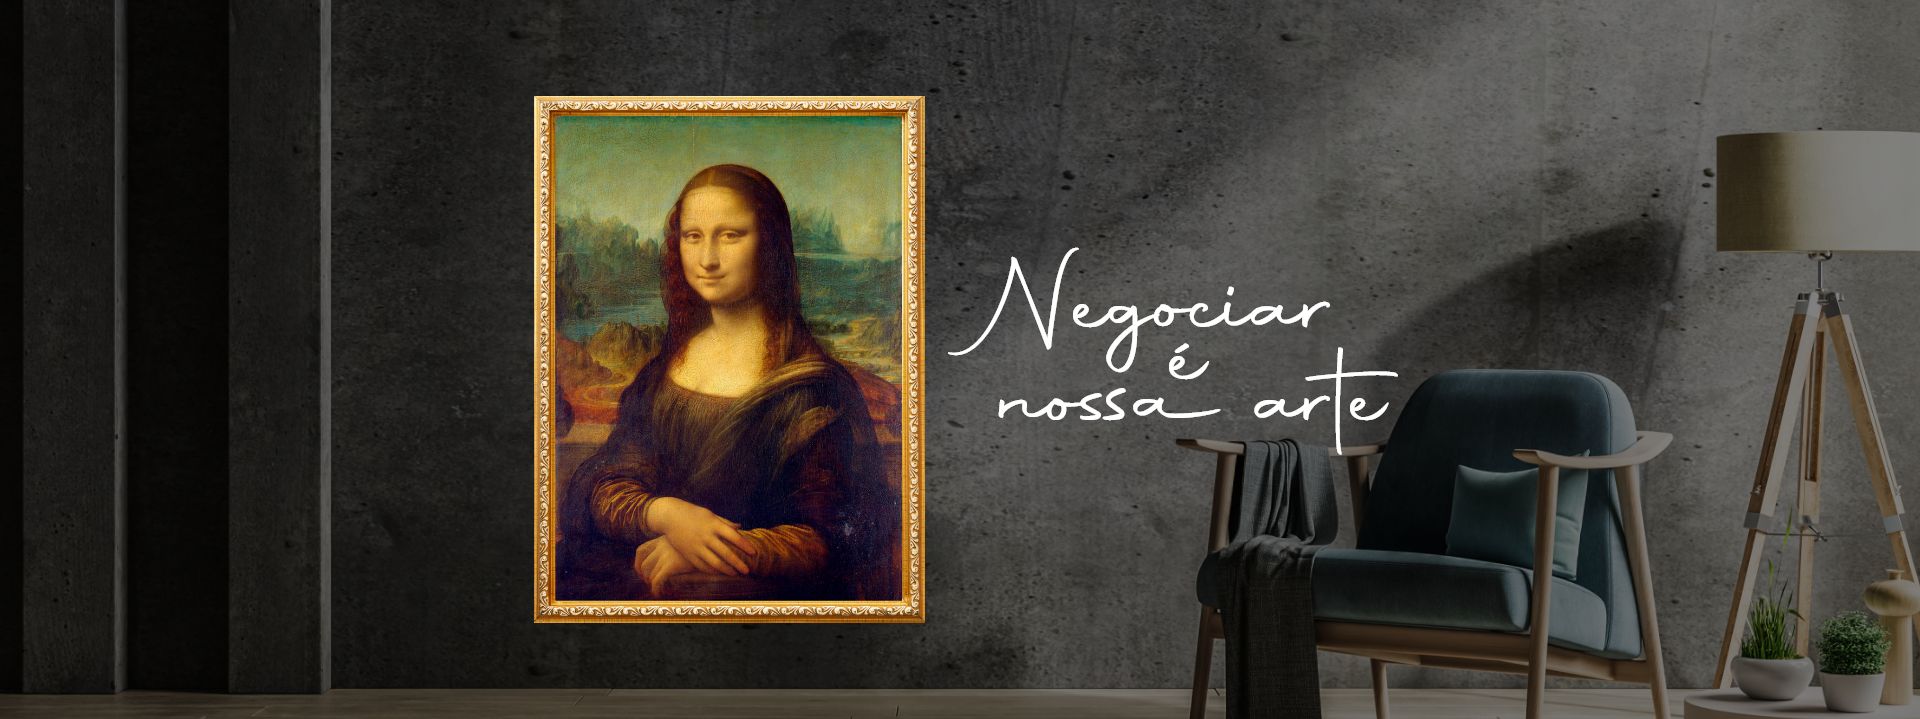 Composição de imagens, do lado esquerdo, o quadro da 'Mona Lisa', no lado direito uma poltrona moderna com braços de madeira e o texto: 'Negociar é a nossa arte.', 'Imóveis em Ponta Grossa e cidades do paraná'.